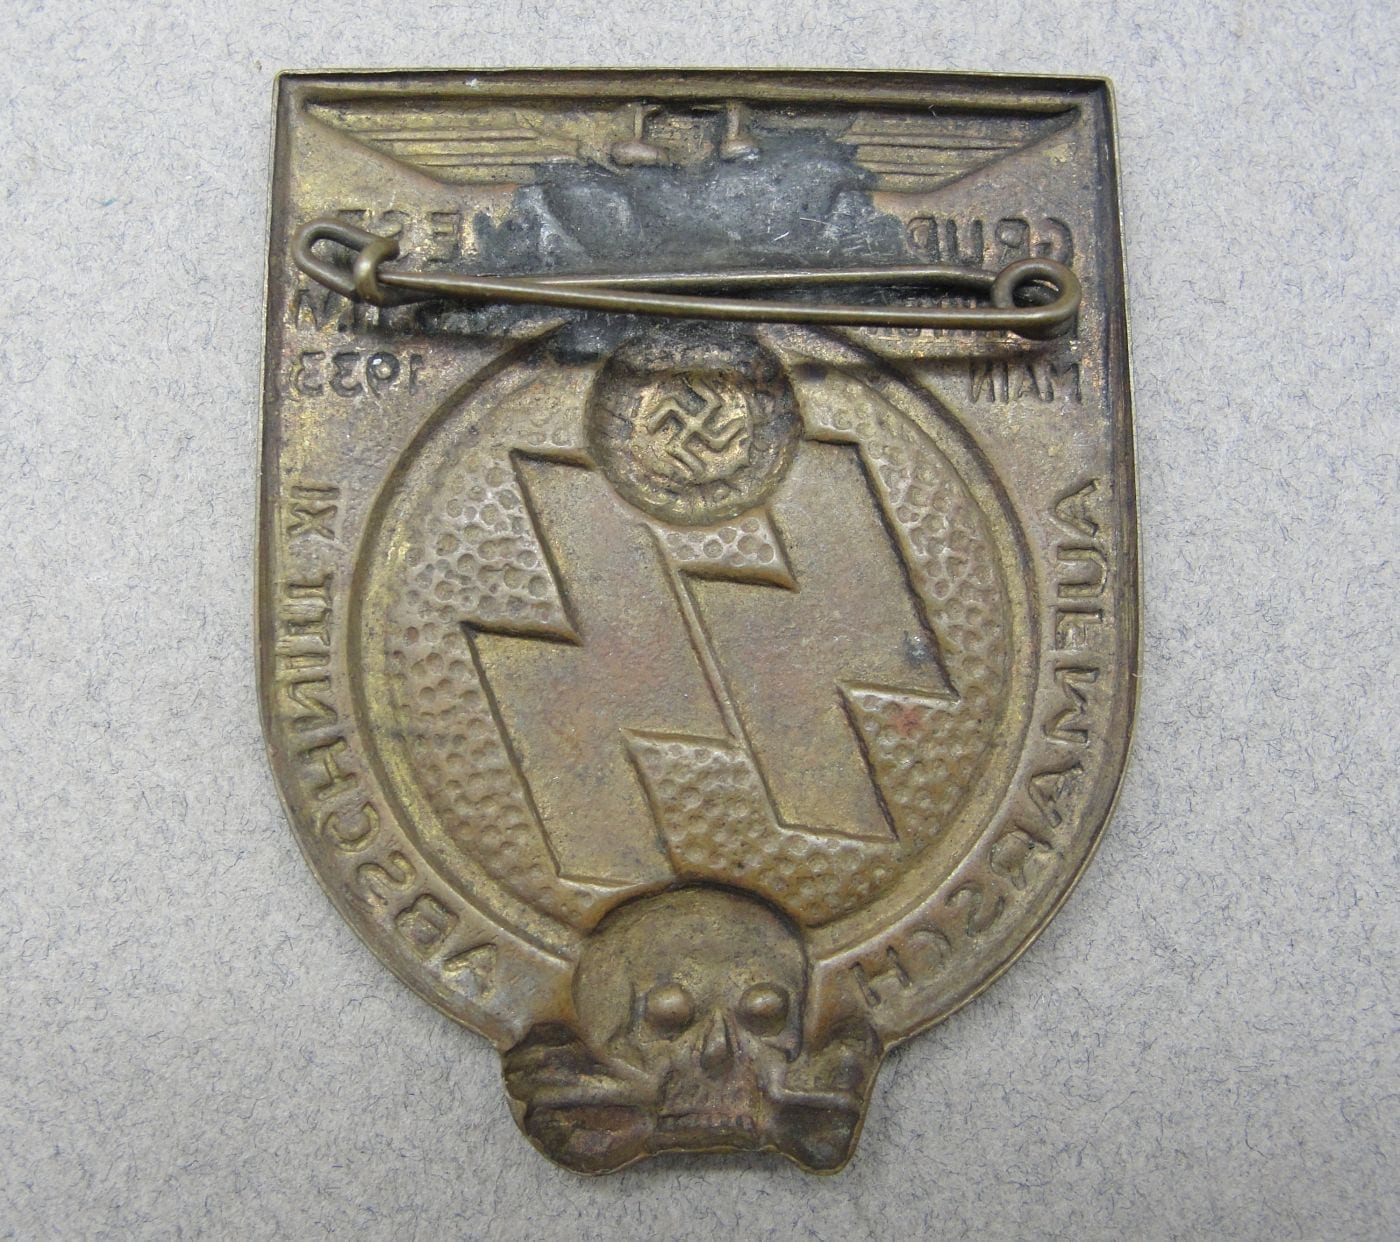 1933 SS "GRUPPE WEST FRANKFURT MAIN AUFMARSCH ABSCHNITT XI" Badge